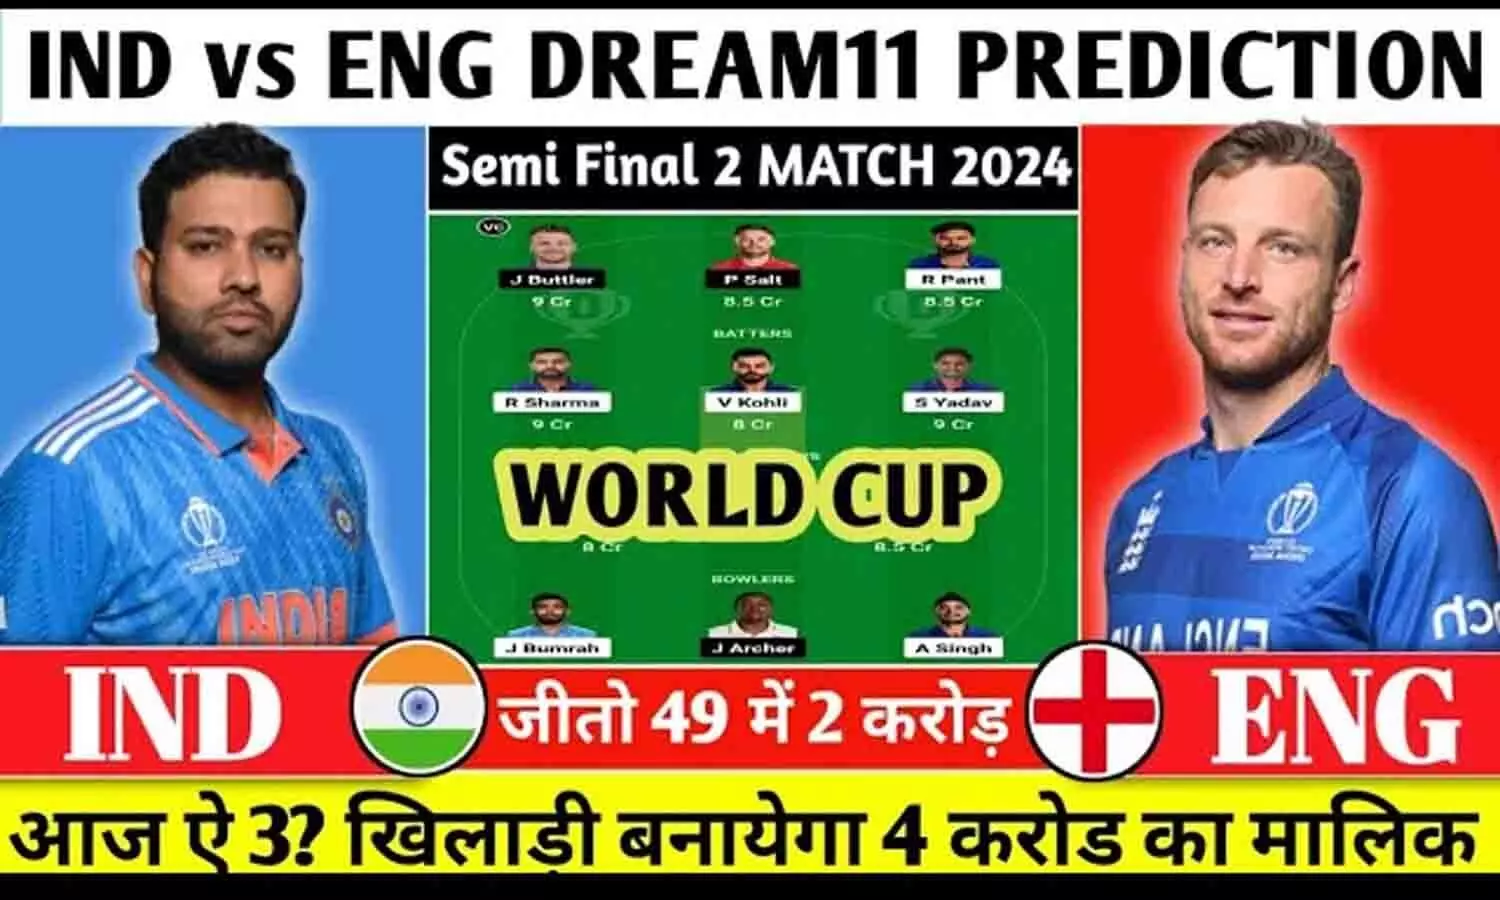 Ind vs Eng Dream11 Prediction: ऐसे बनाये टीम, 100% पहली रैंक आएगी, आज के मैच में बन जायेंगे 2 करोड़ के मालिक